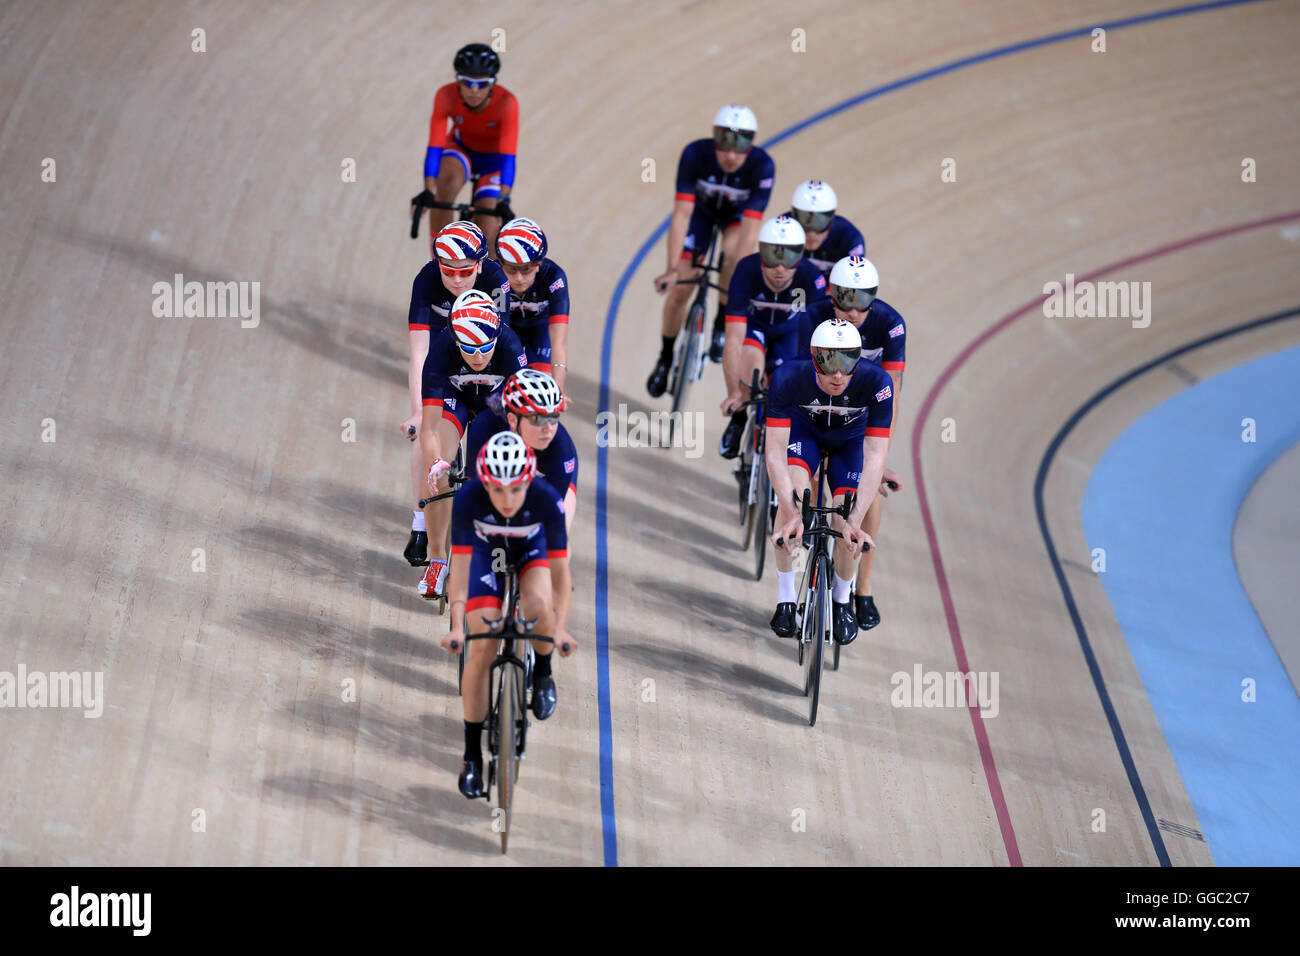 Great Britain's men and women's cycling team pendant une session de formation au vélodrome avant les Jeux Olympiques de Rio, au Brésil. Banque D'Images